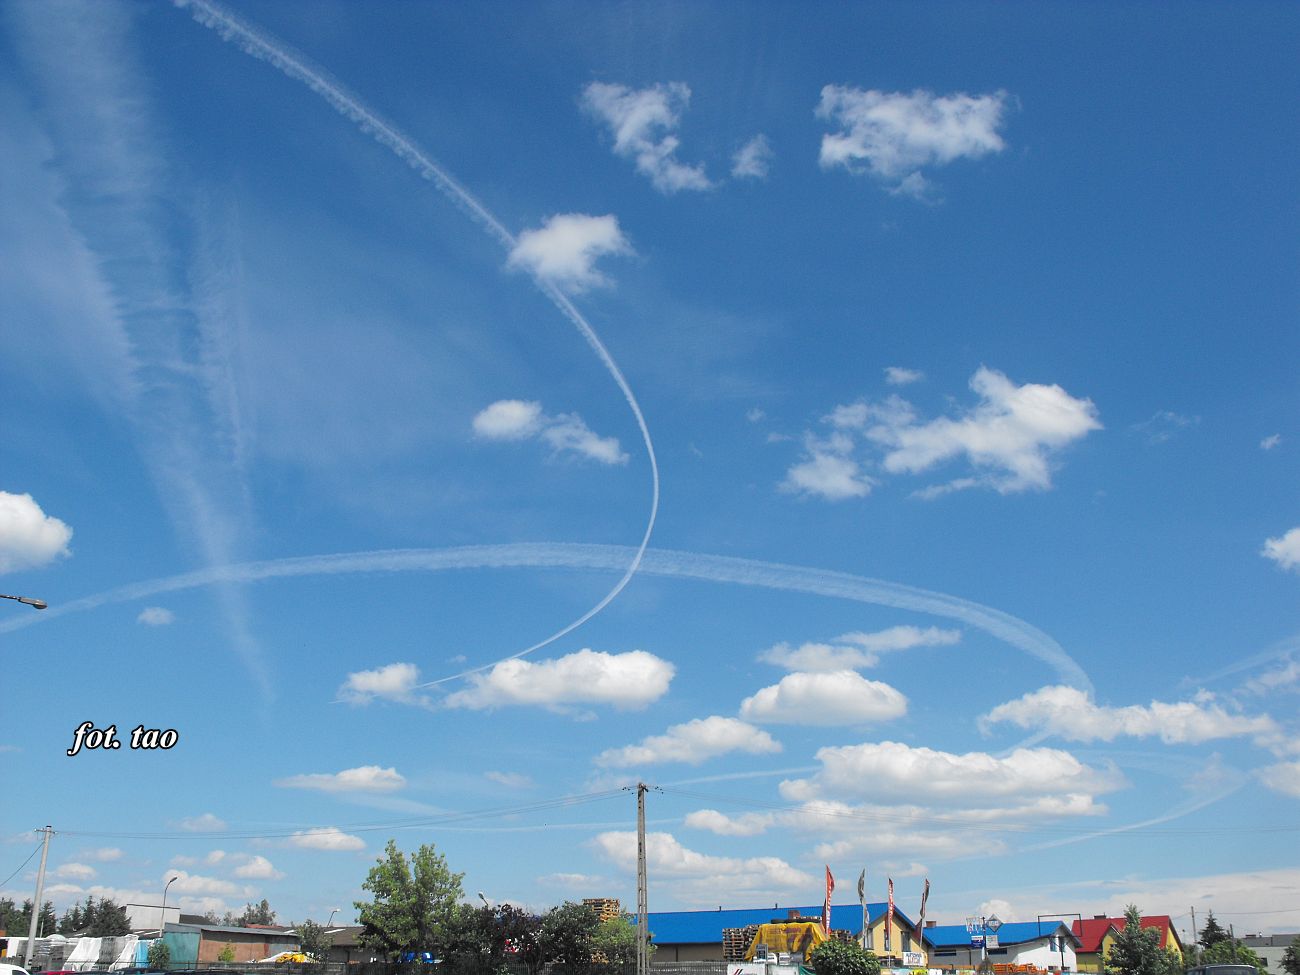 Malowanie okrgw na niebie przez samoloty nad Sierpcem, 10.06.2016 r.